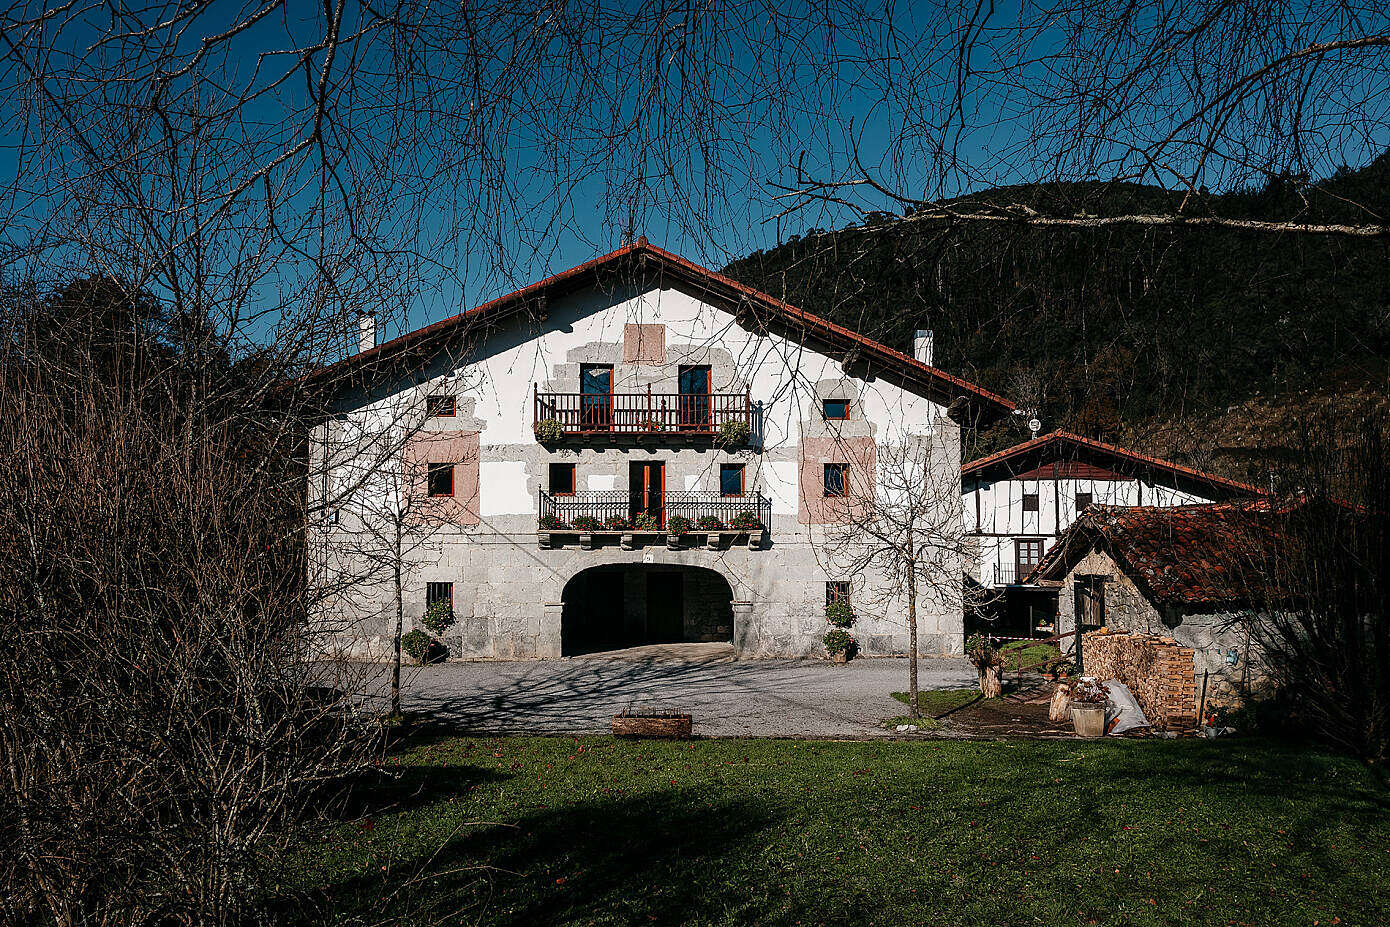 Goizco Farmhouse by Bilbao Architecture Team